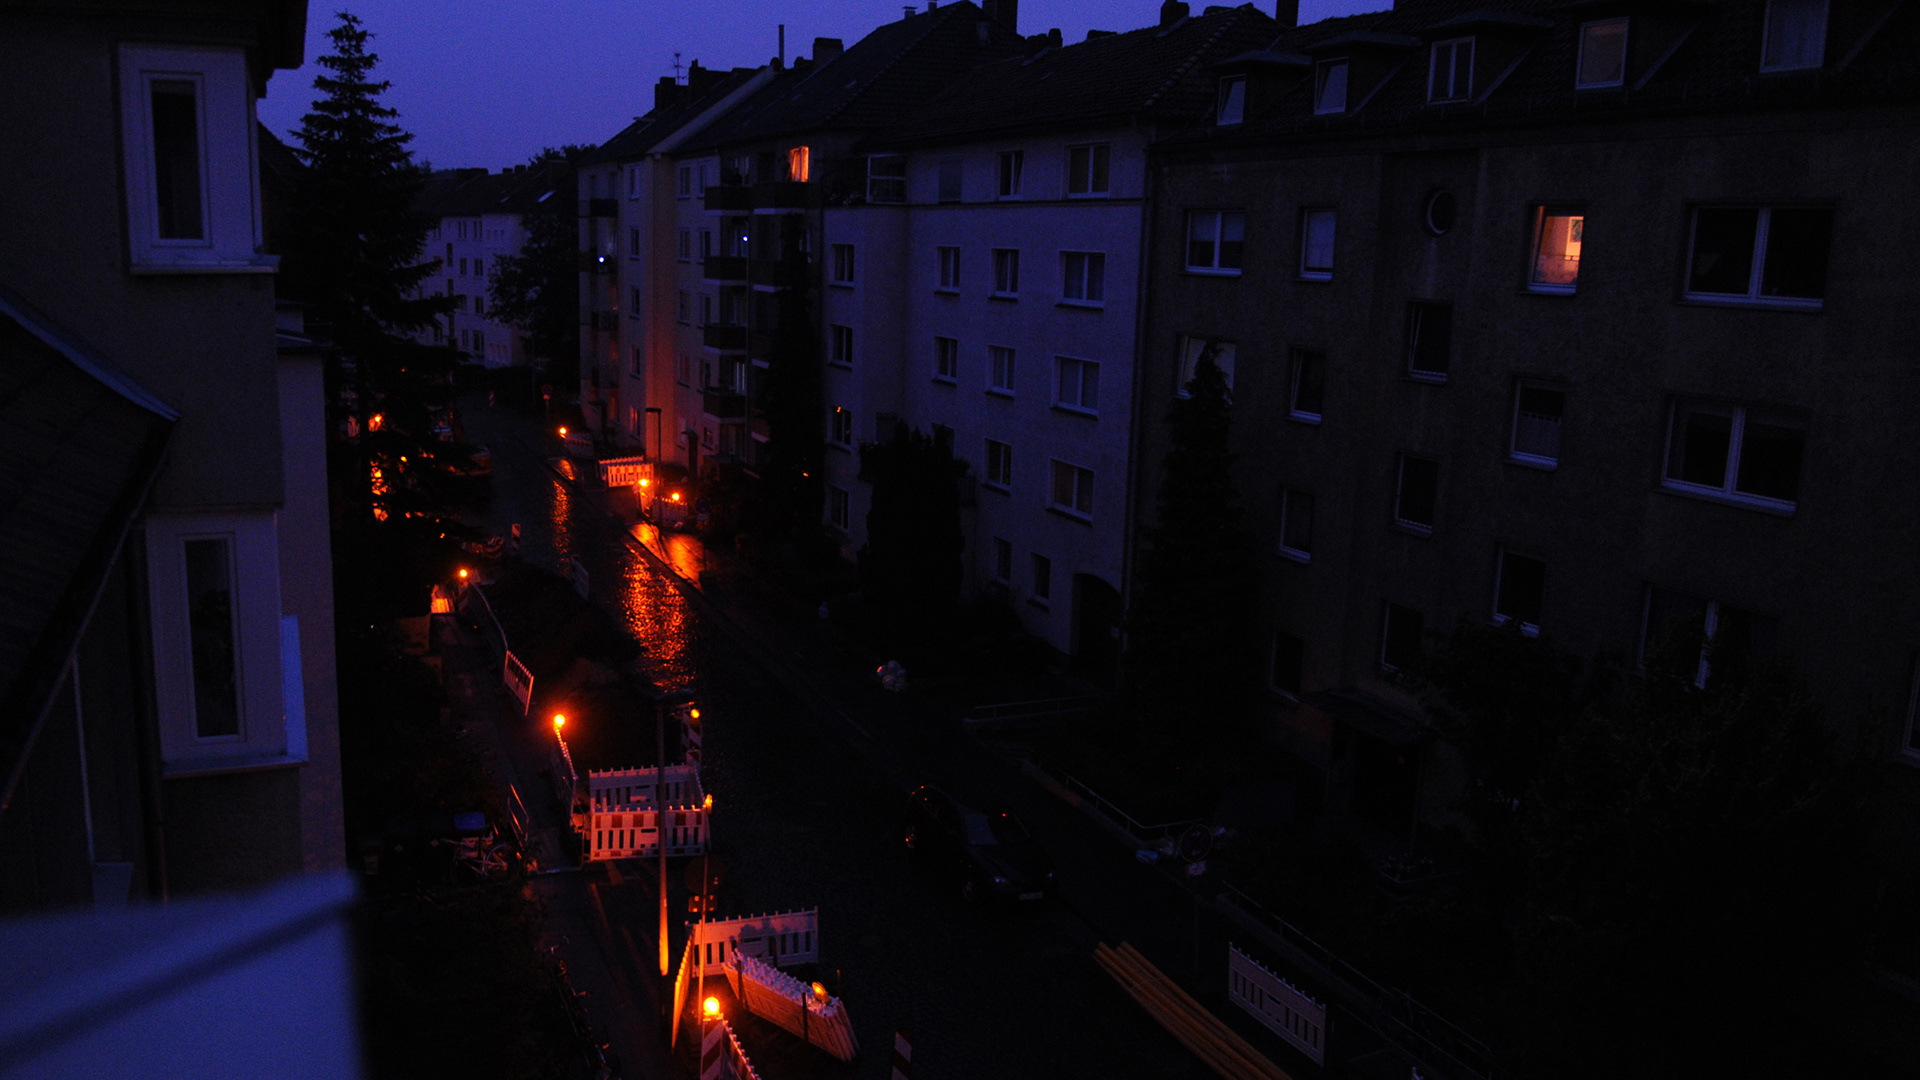 Stromausfall in Hannover im Juli 2011: Akkubetriebene Lampen einer Baustelle sorgen für etwas Licht.